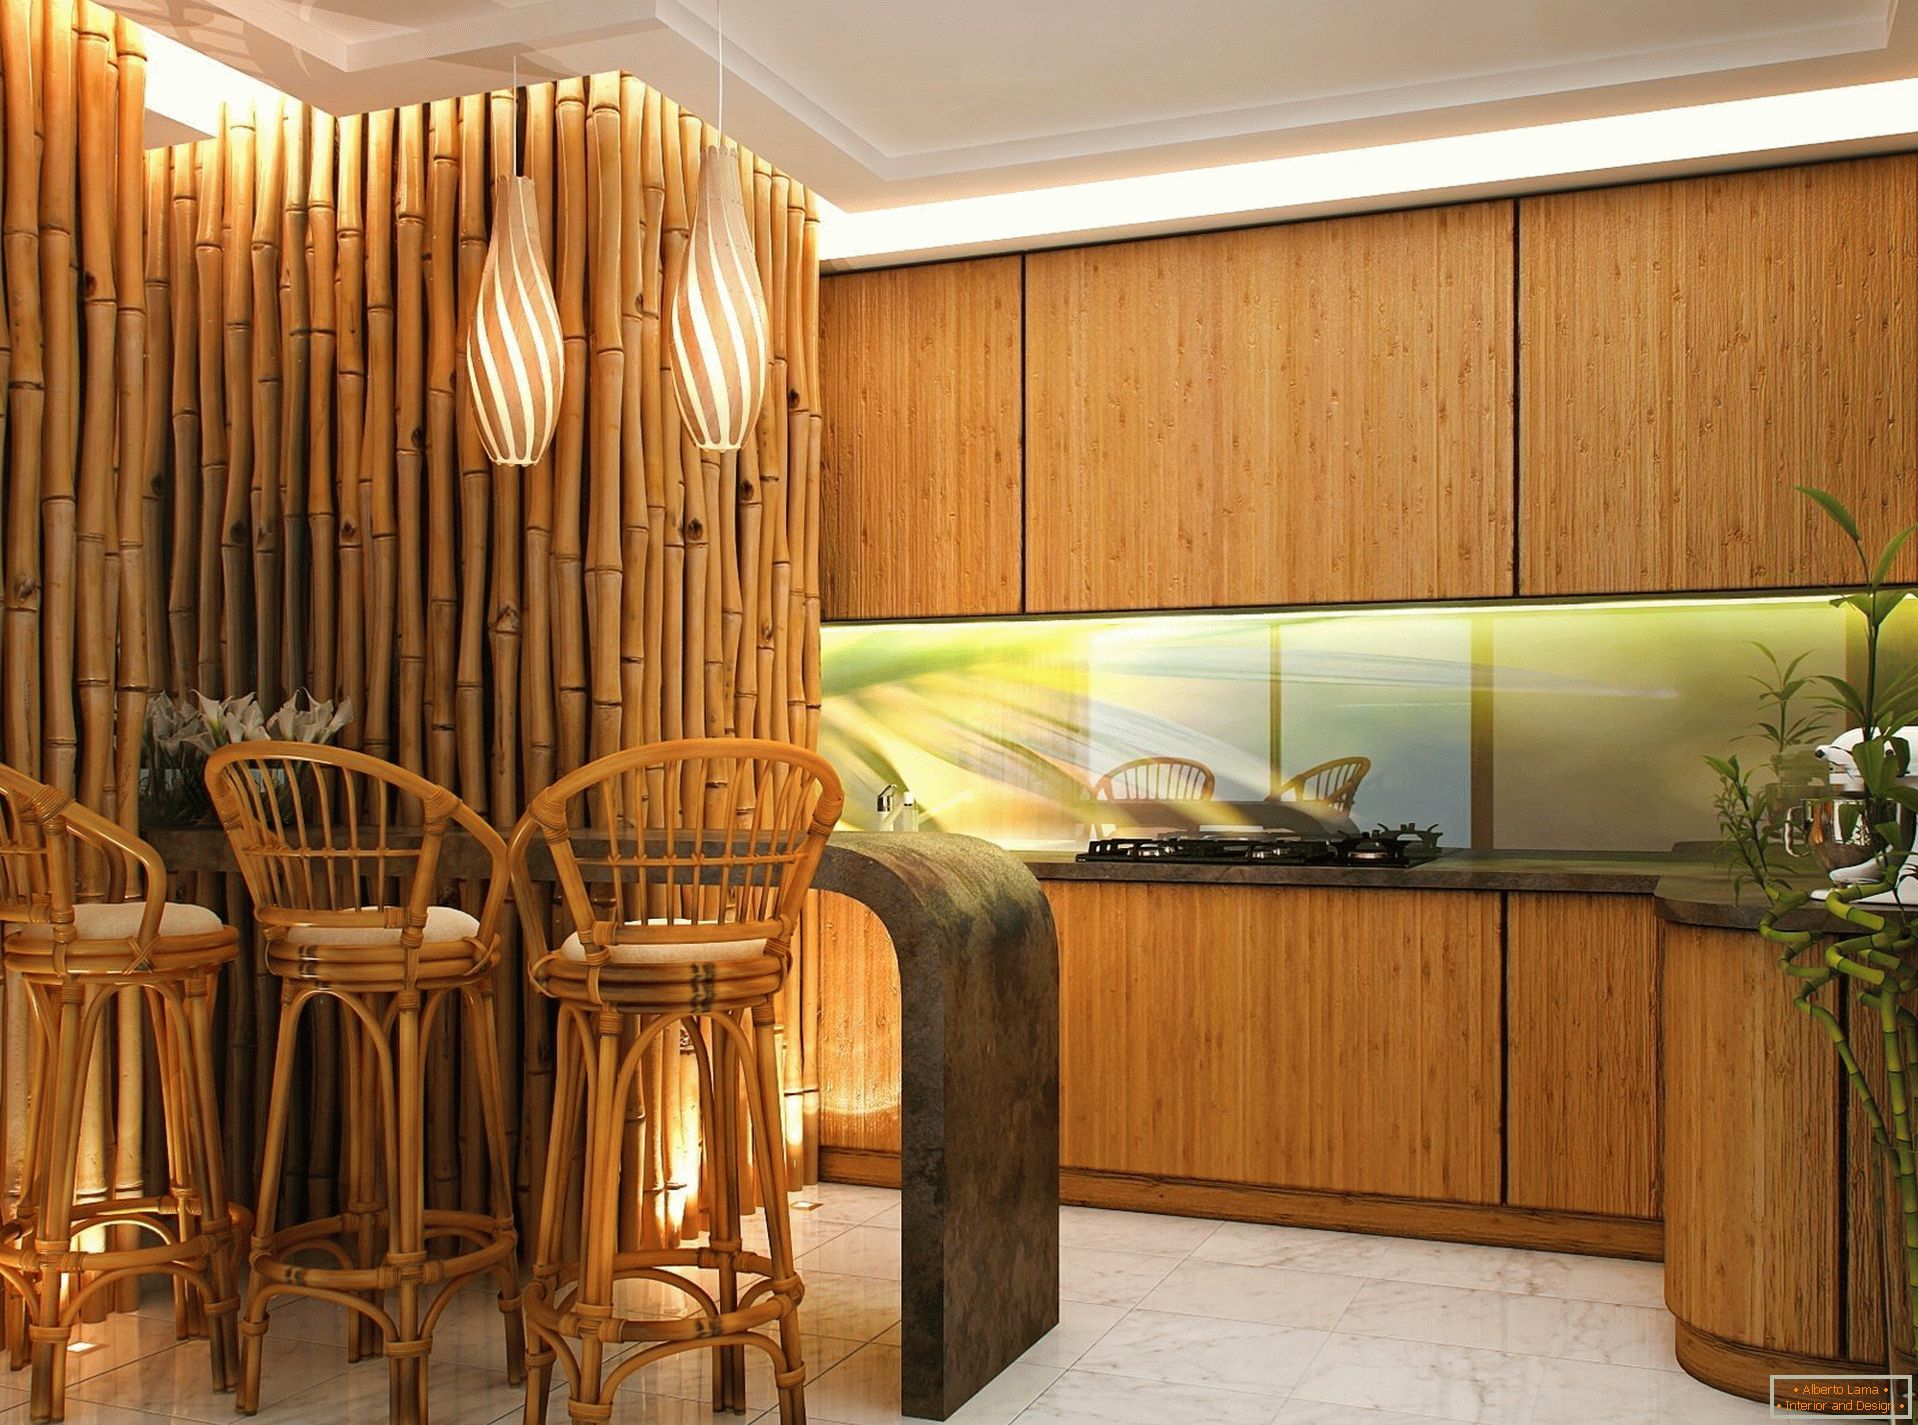 Wände und Stühle aus Bambus